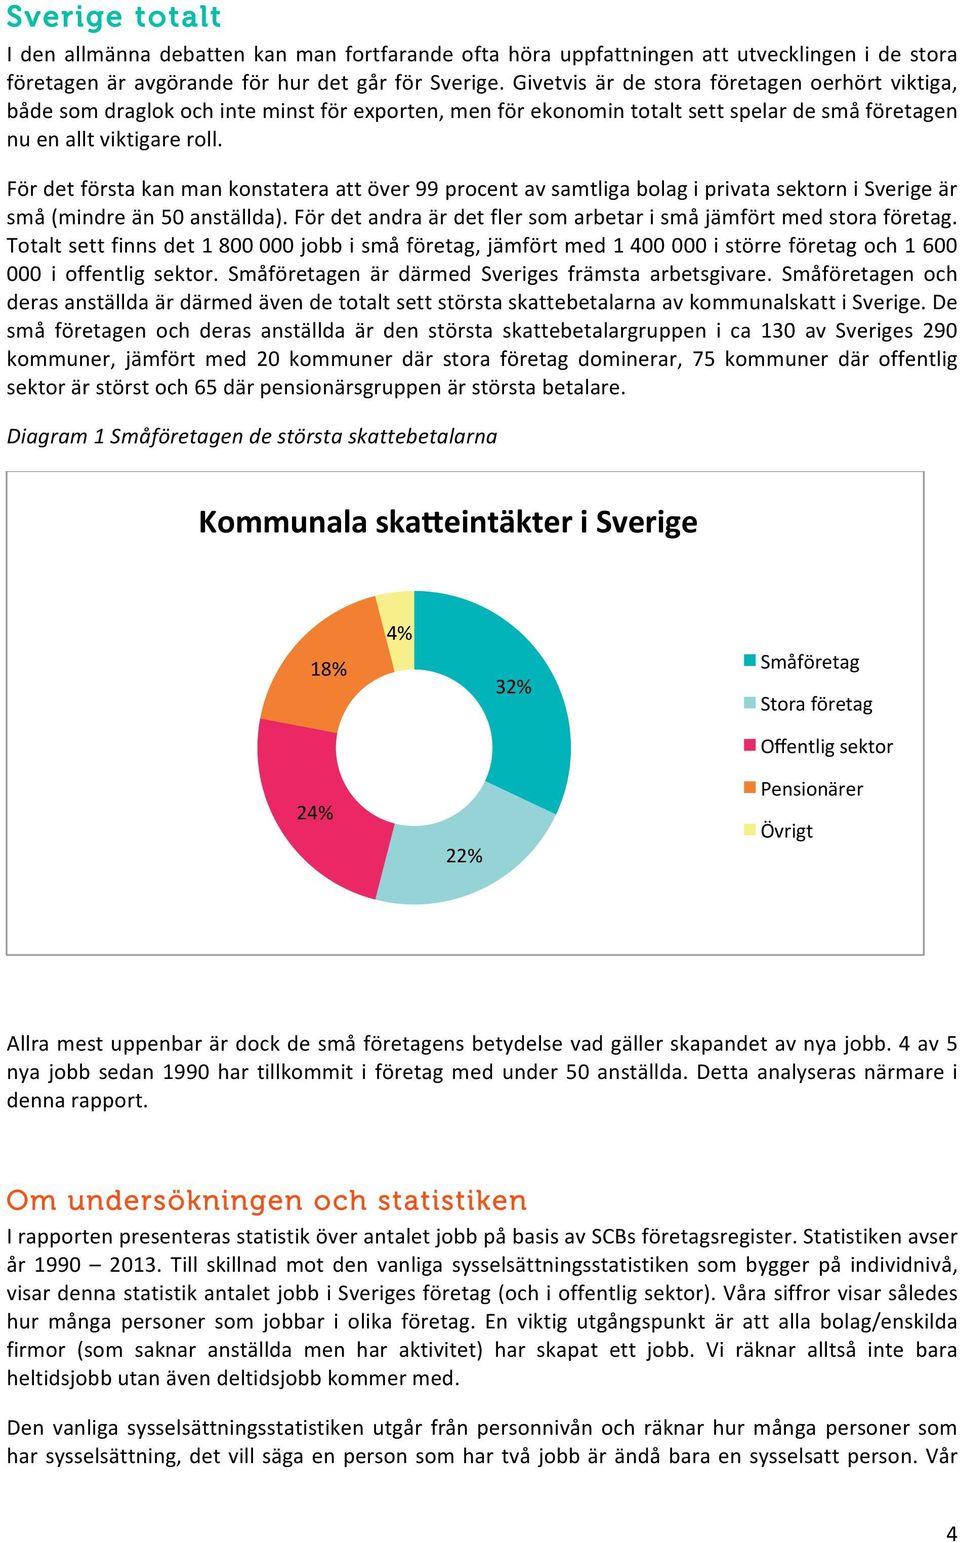 För det första kan man konstatera att över 99 procent av samtliga bolag i privata sektorn i Sverige är små (mindre än 50 anställda).